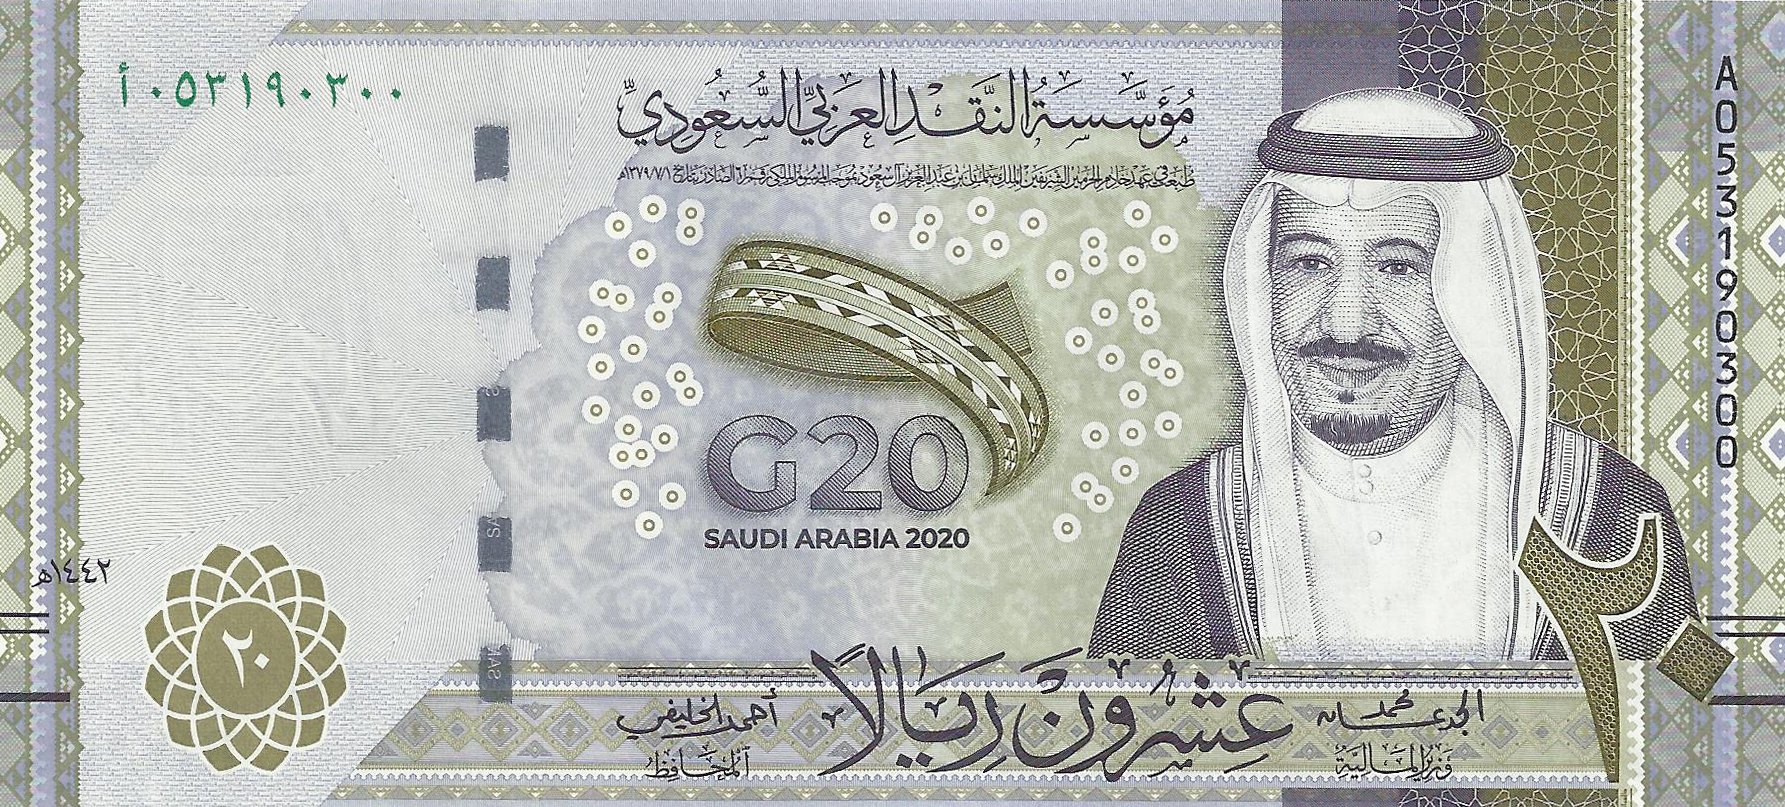 سعر الريال السعودي اليوم فى مصر مقابل الجنيه المصرى 11 أغسطس 1